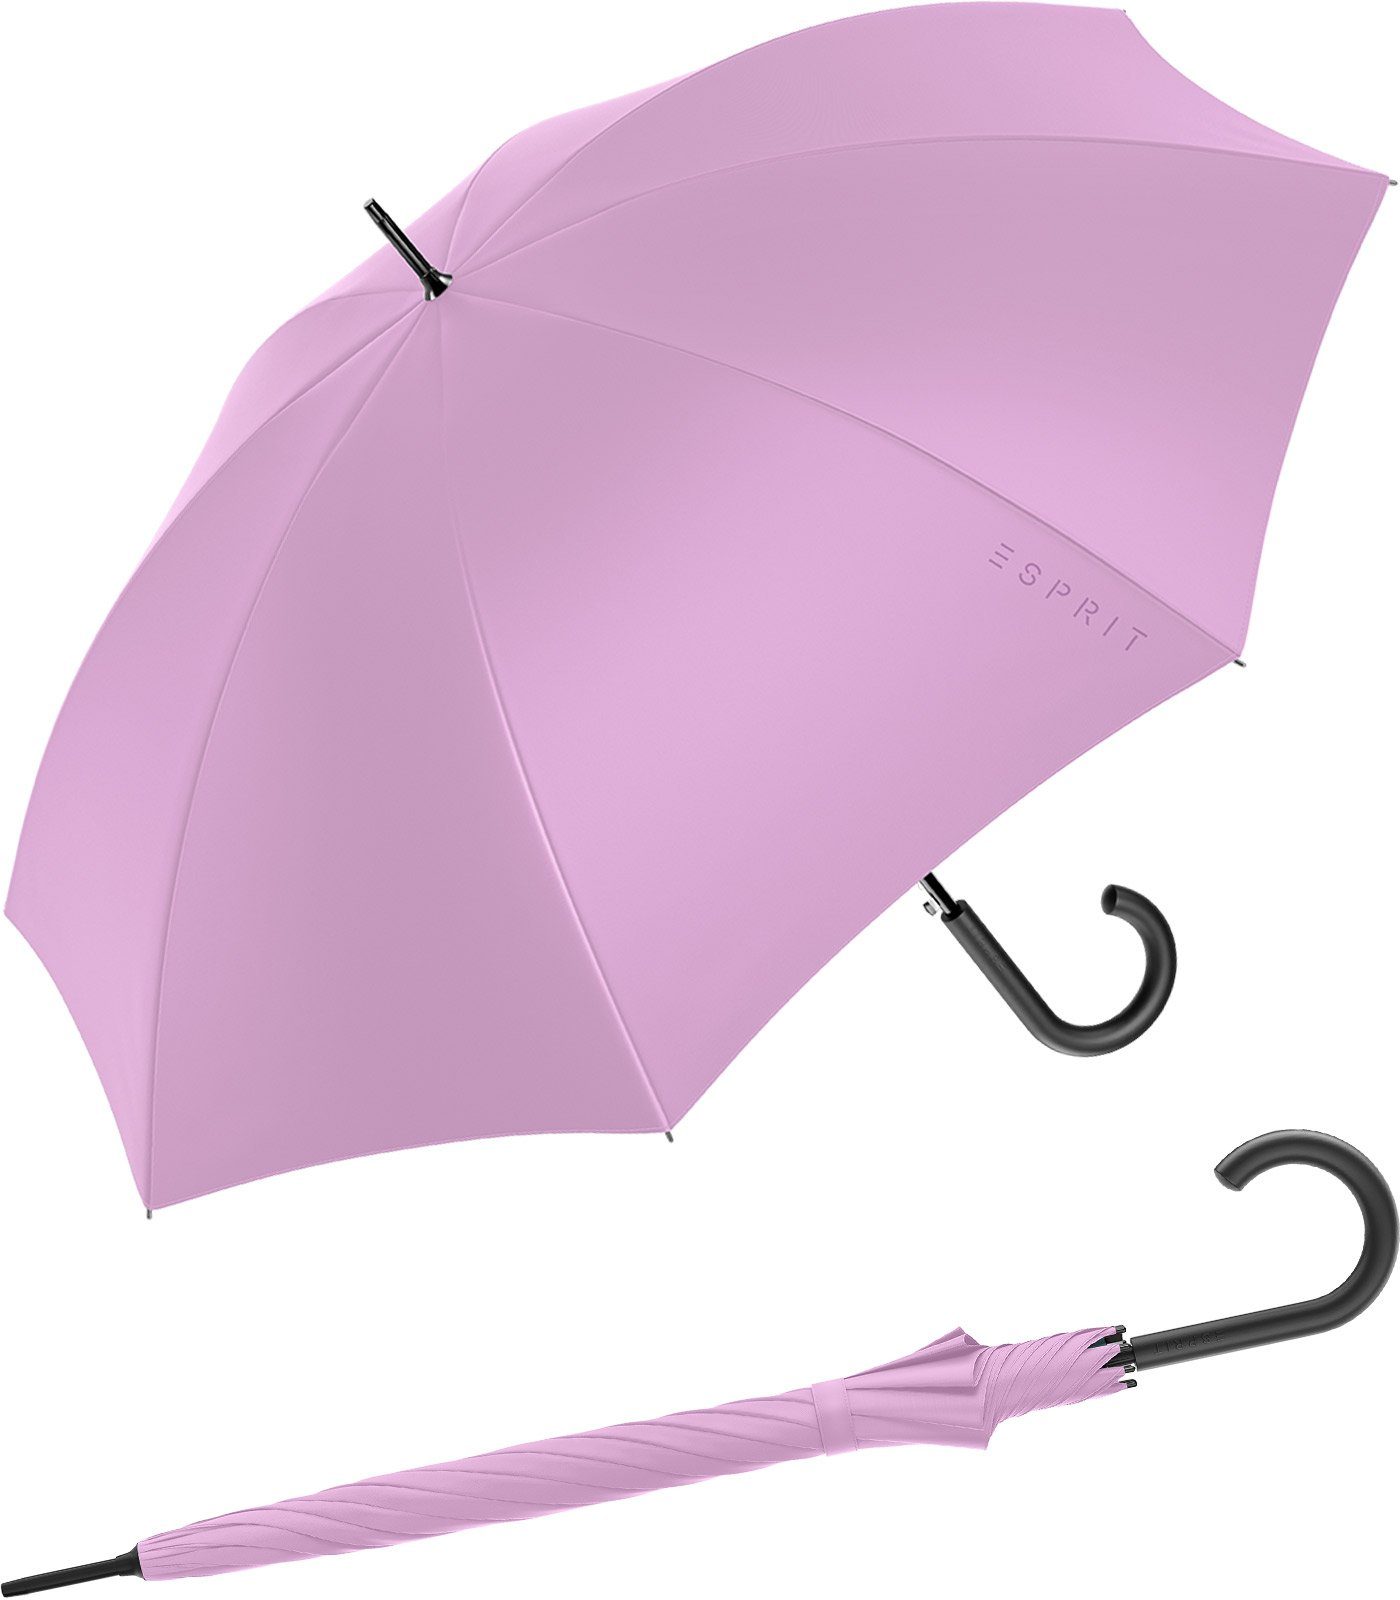 Esprit Langregenschirm Damen-Regenschirm mit Automatik FJ 2023, groß und stabil, in den Trendfarben violett